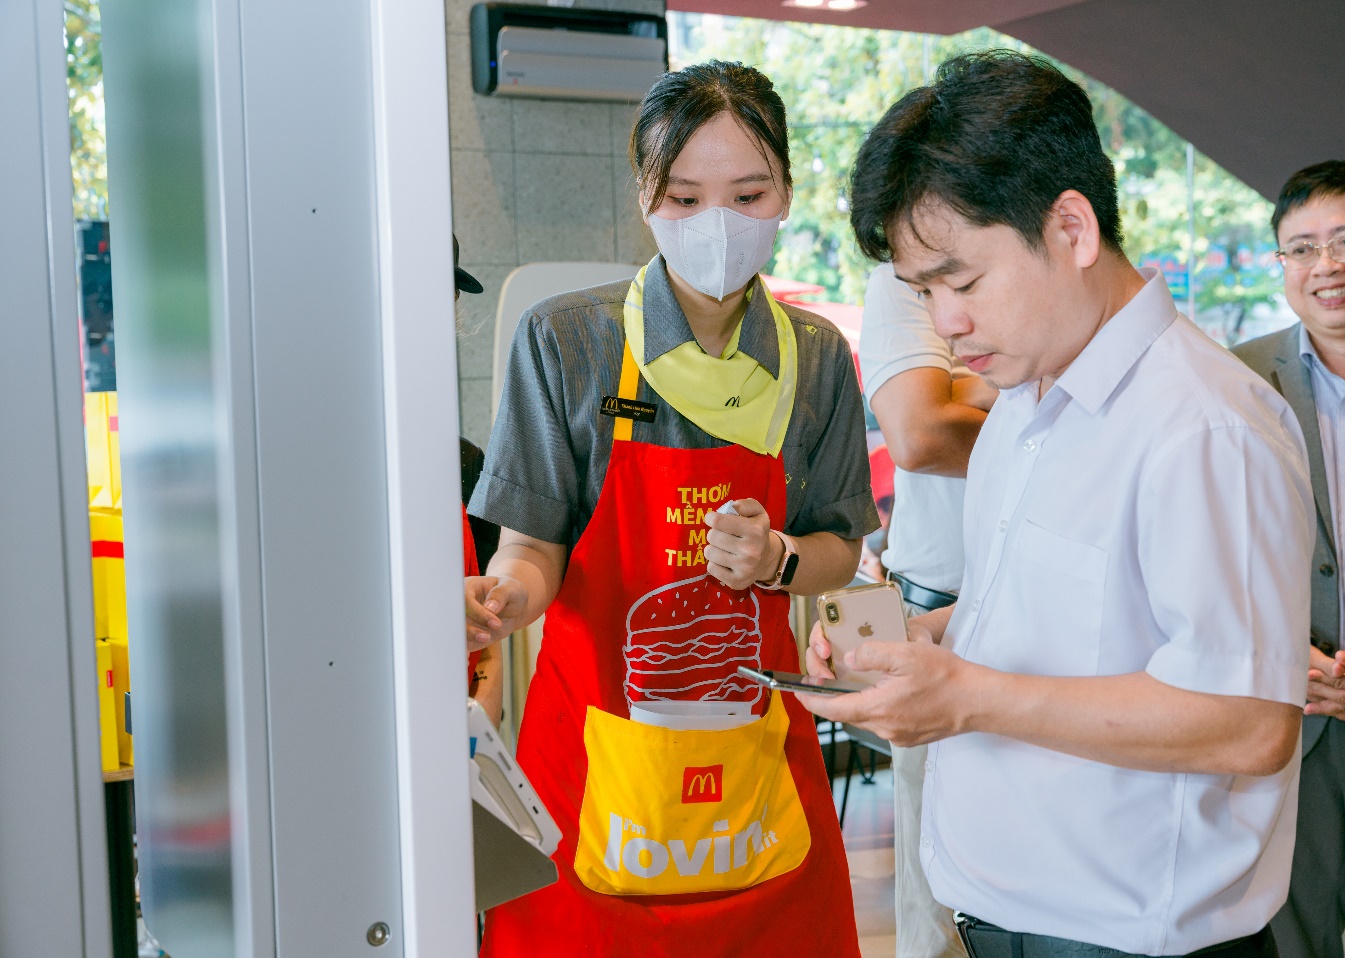 McDonald’s chuẩn bị khai trương cửa hàng đầu tiên tại Đà Nẵng, tung nhiều khuyến mãi chiều lòng thực khách - Ảnh 4.